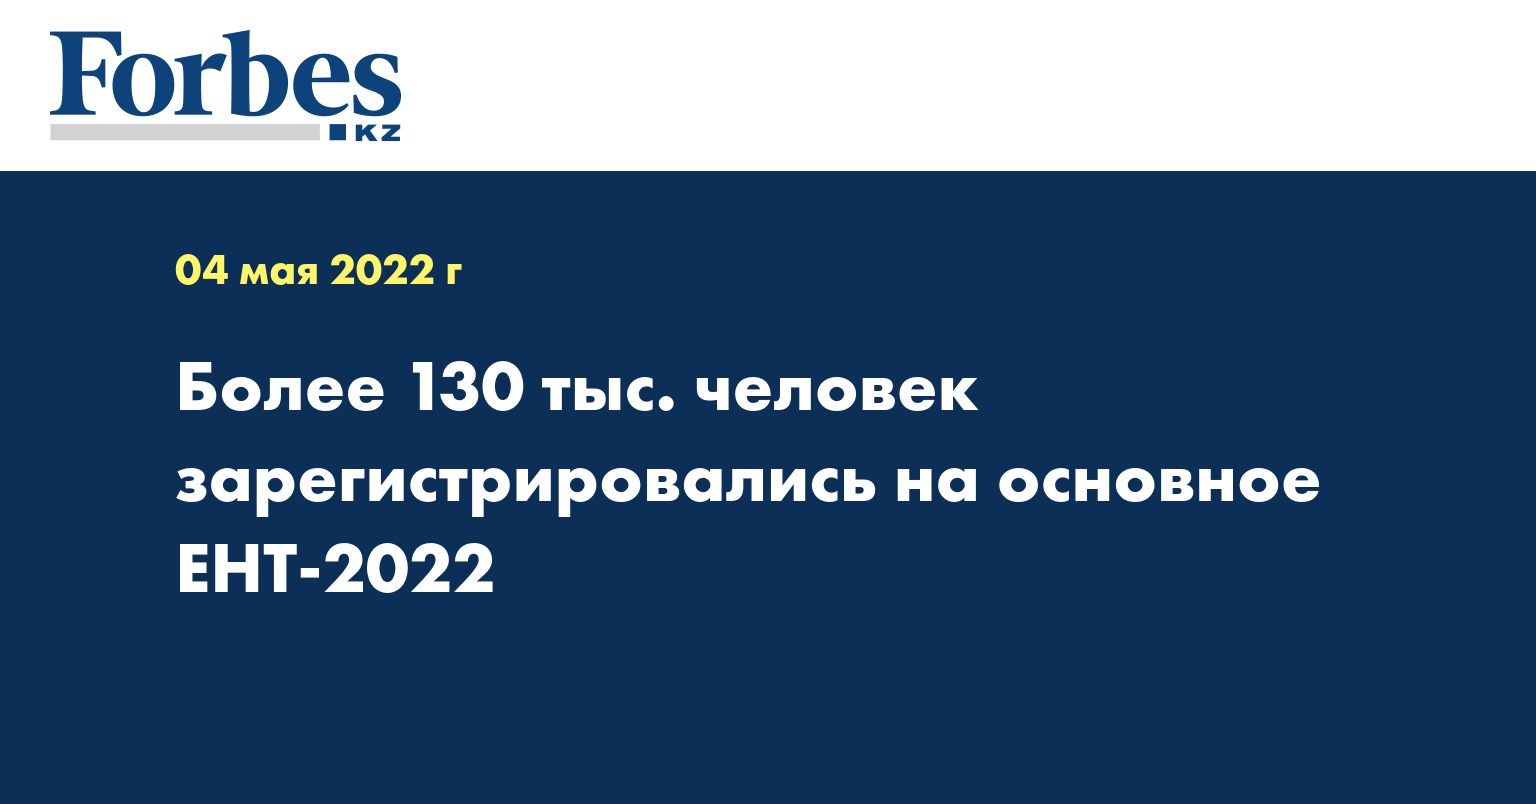 Более 130 тыс. человек зарегистрировались на основное ЕНТ-2022